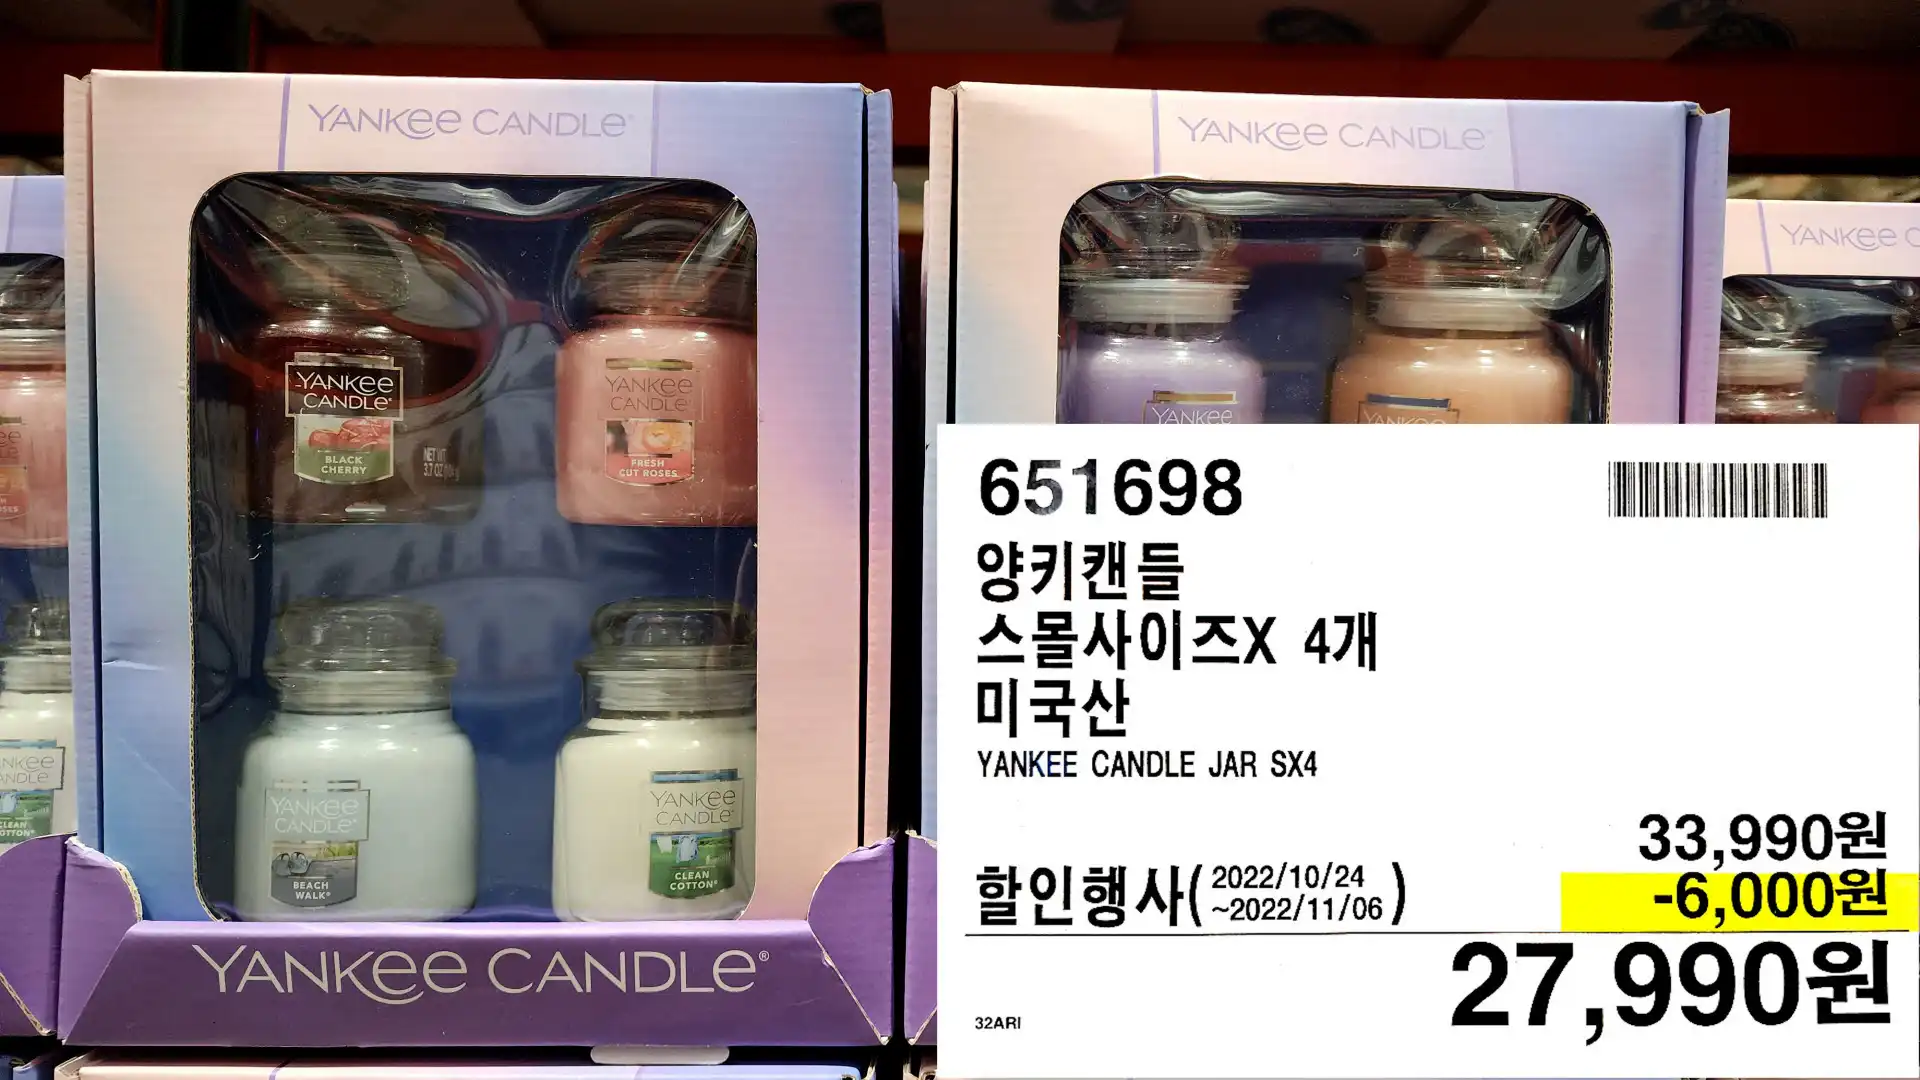 양키캔들
스몰사이즈X 4개
미국산
YANKEE CANDLE JAR SX4
27&#44;990원